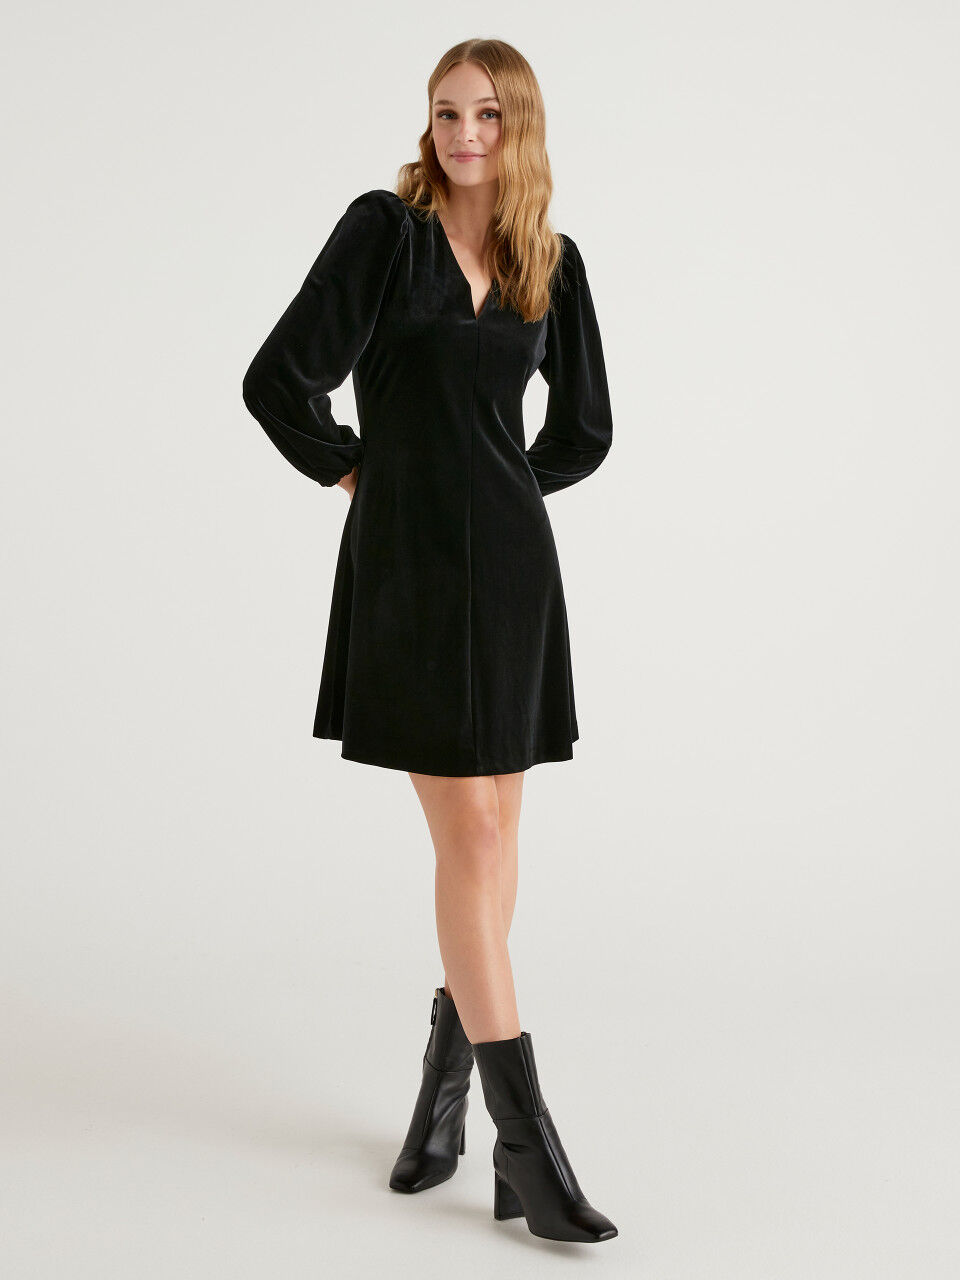 Robe Noire En Mélange De Viscose Benetton en coloris Noir Femme Vêtements Tops Manches courtes 